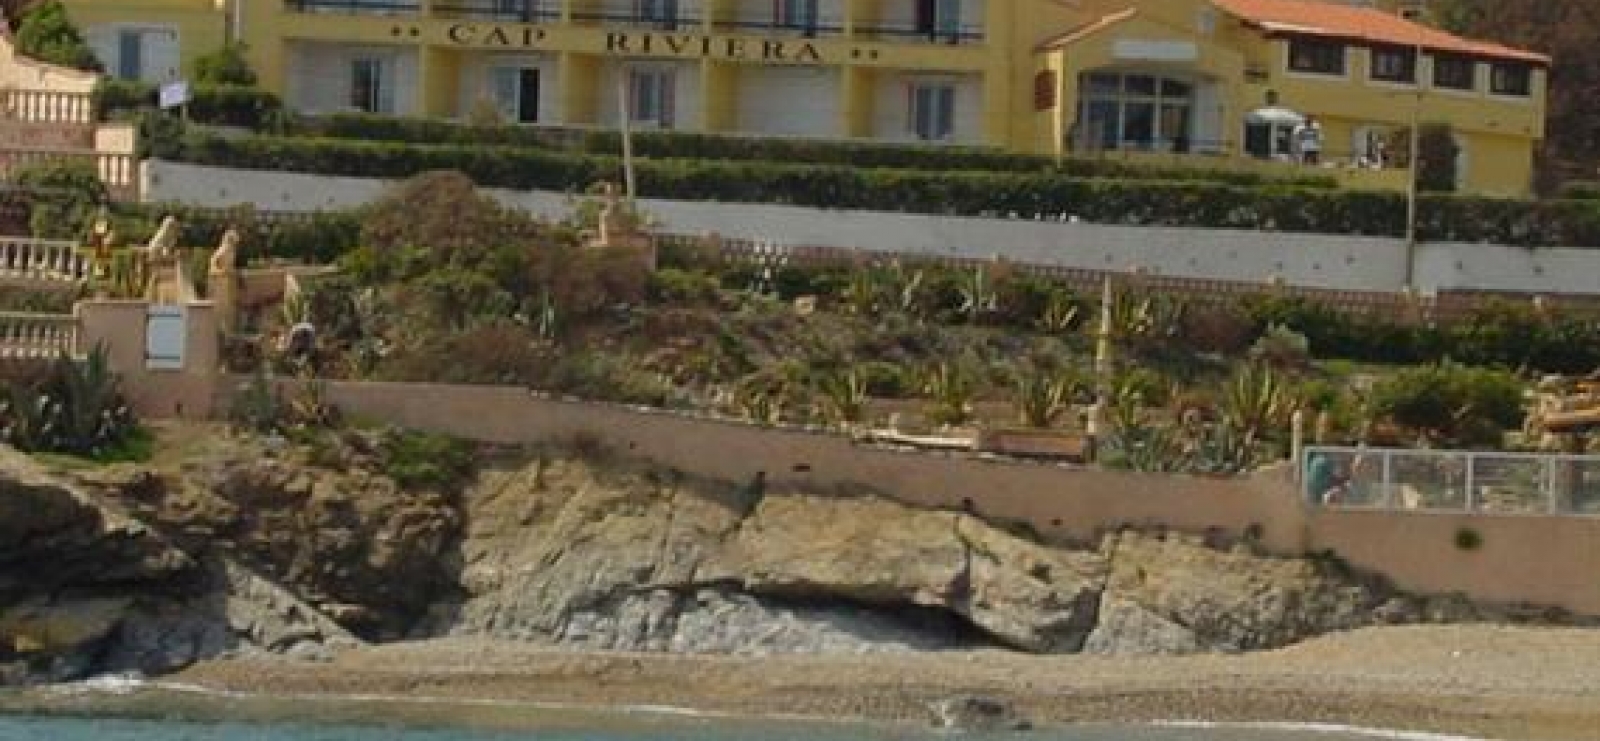 Cap Riviera - St-Aygulf - Fréjus - l'hôtel et la plage